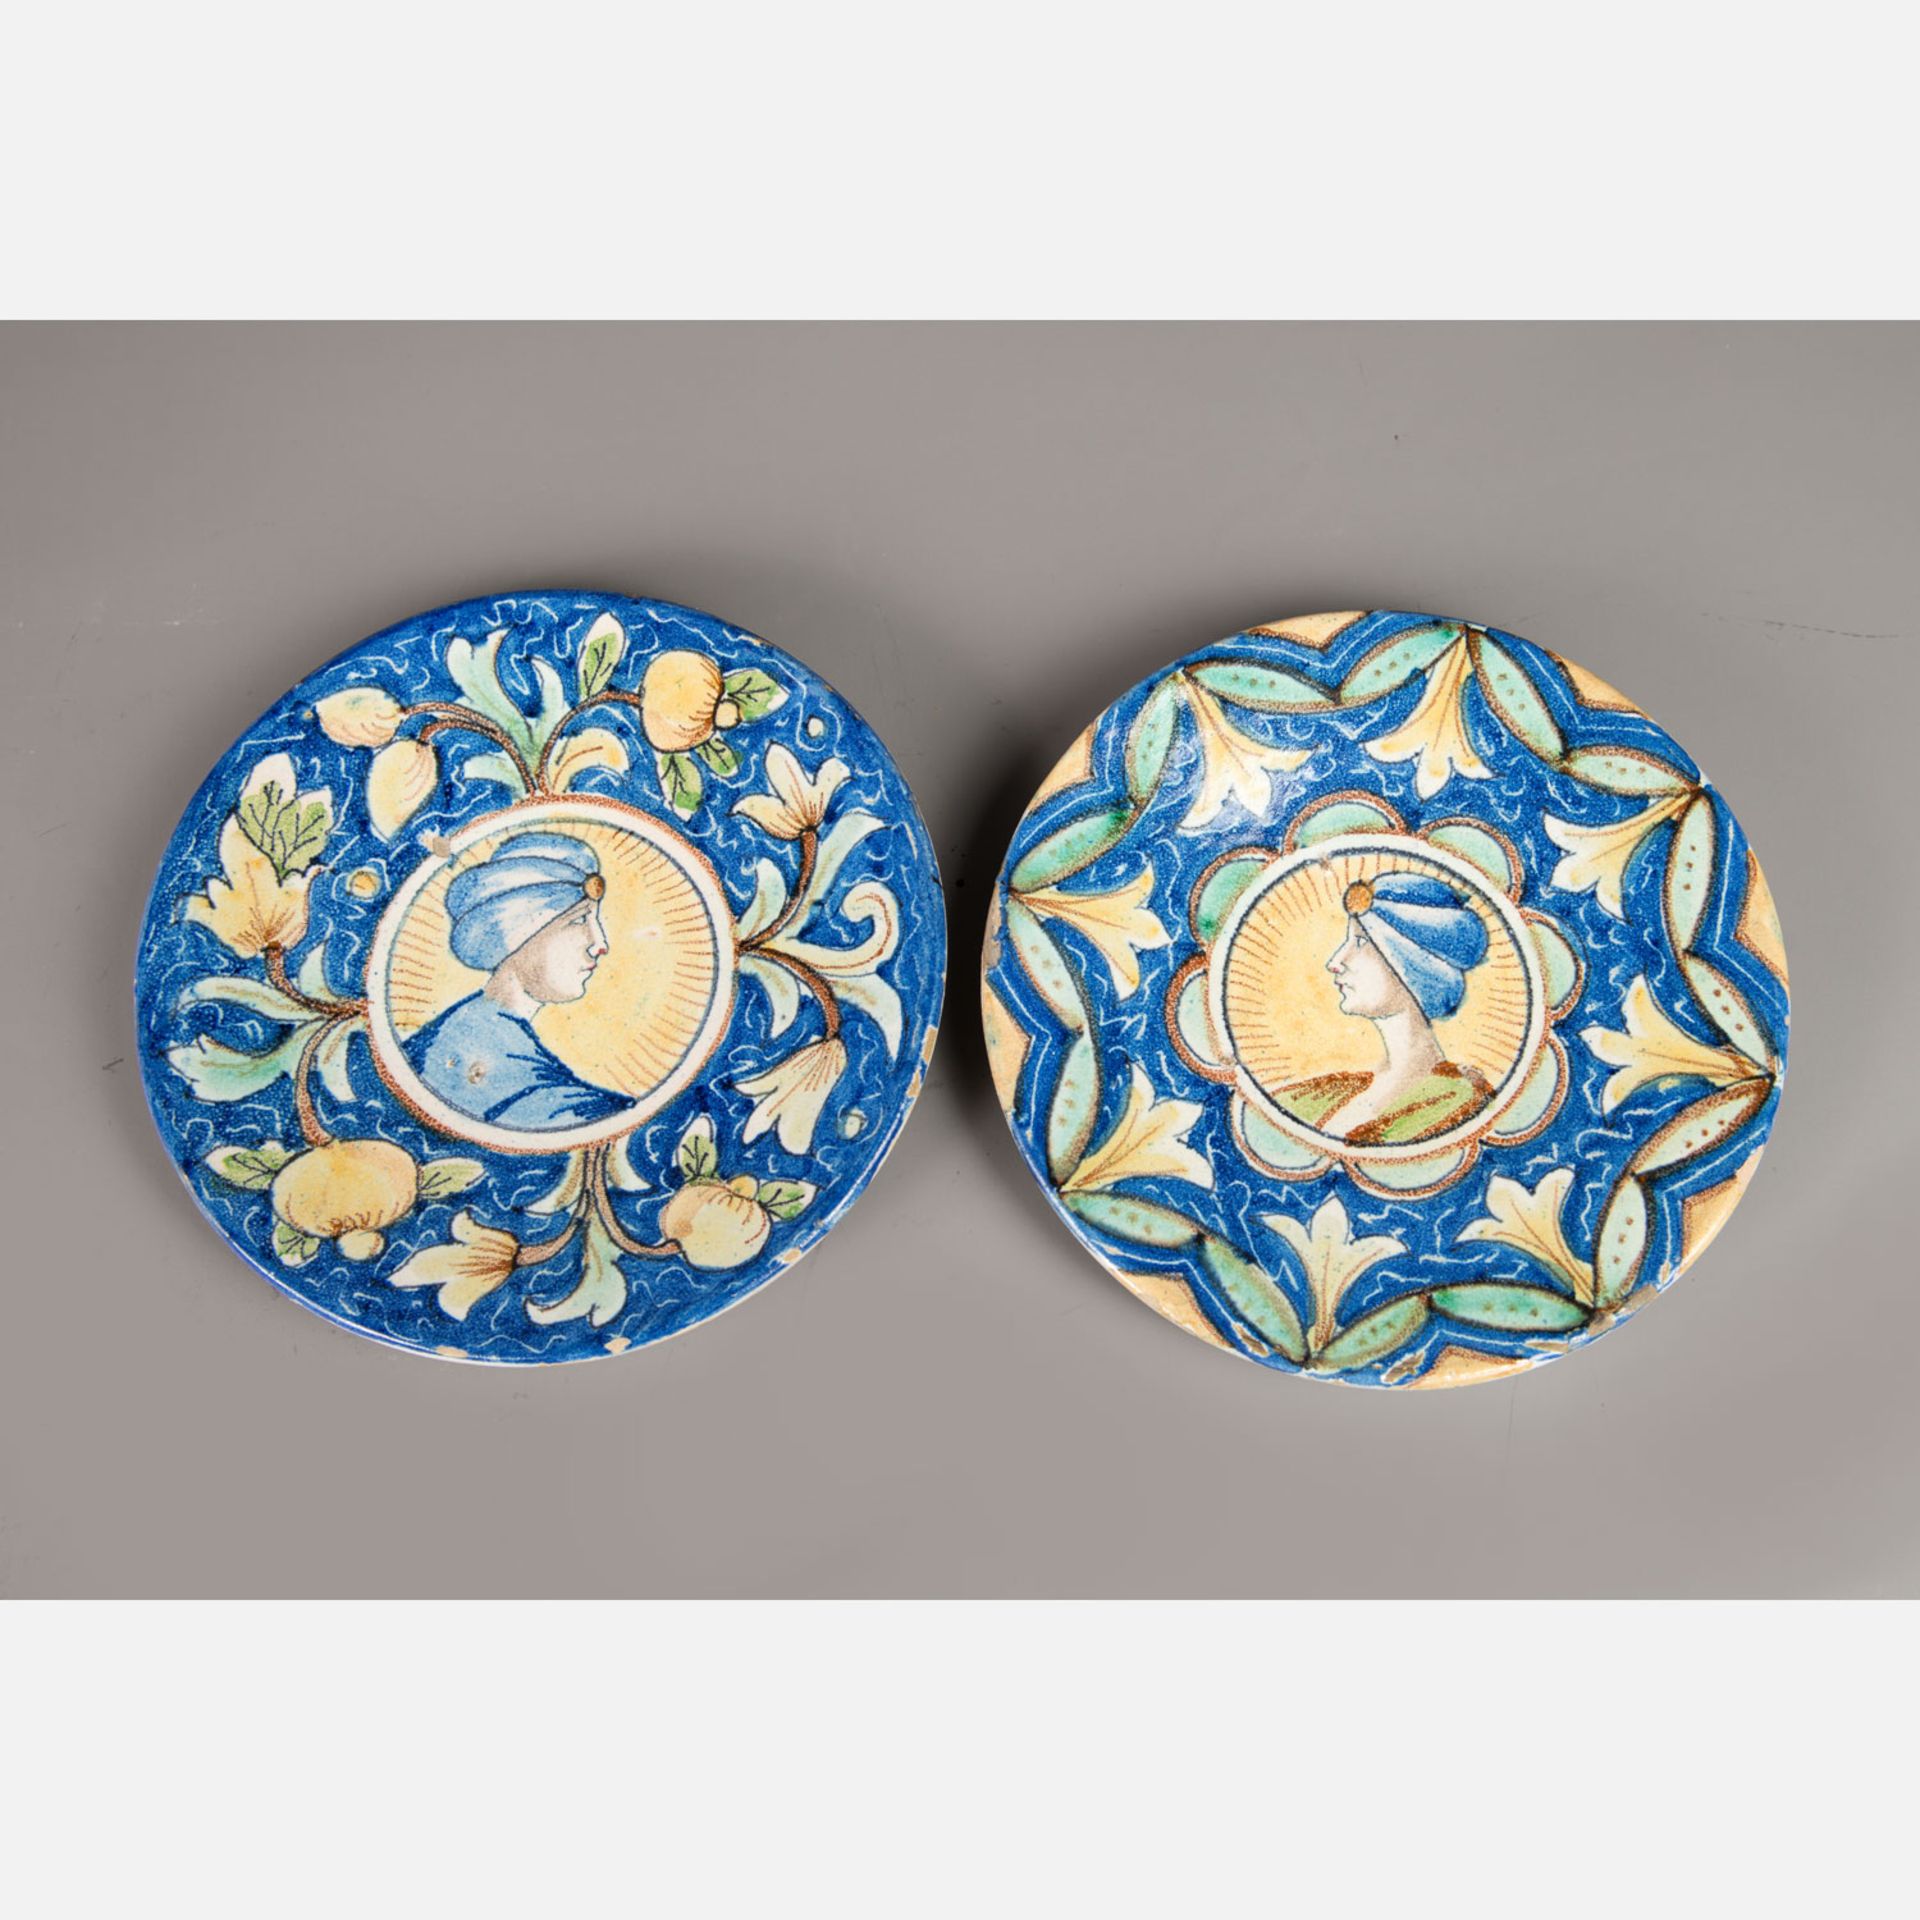 Pair of Deruta ceramic dishes